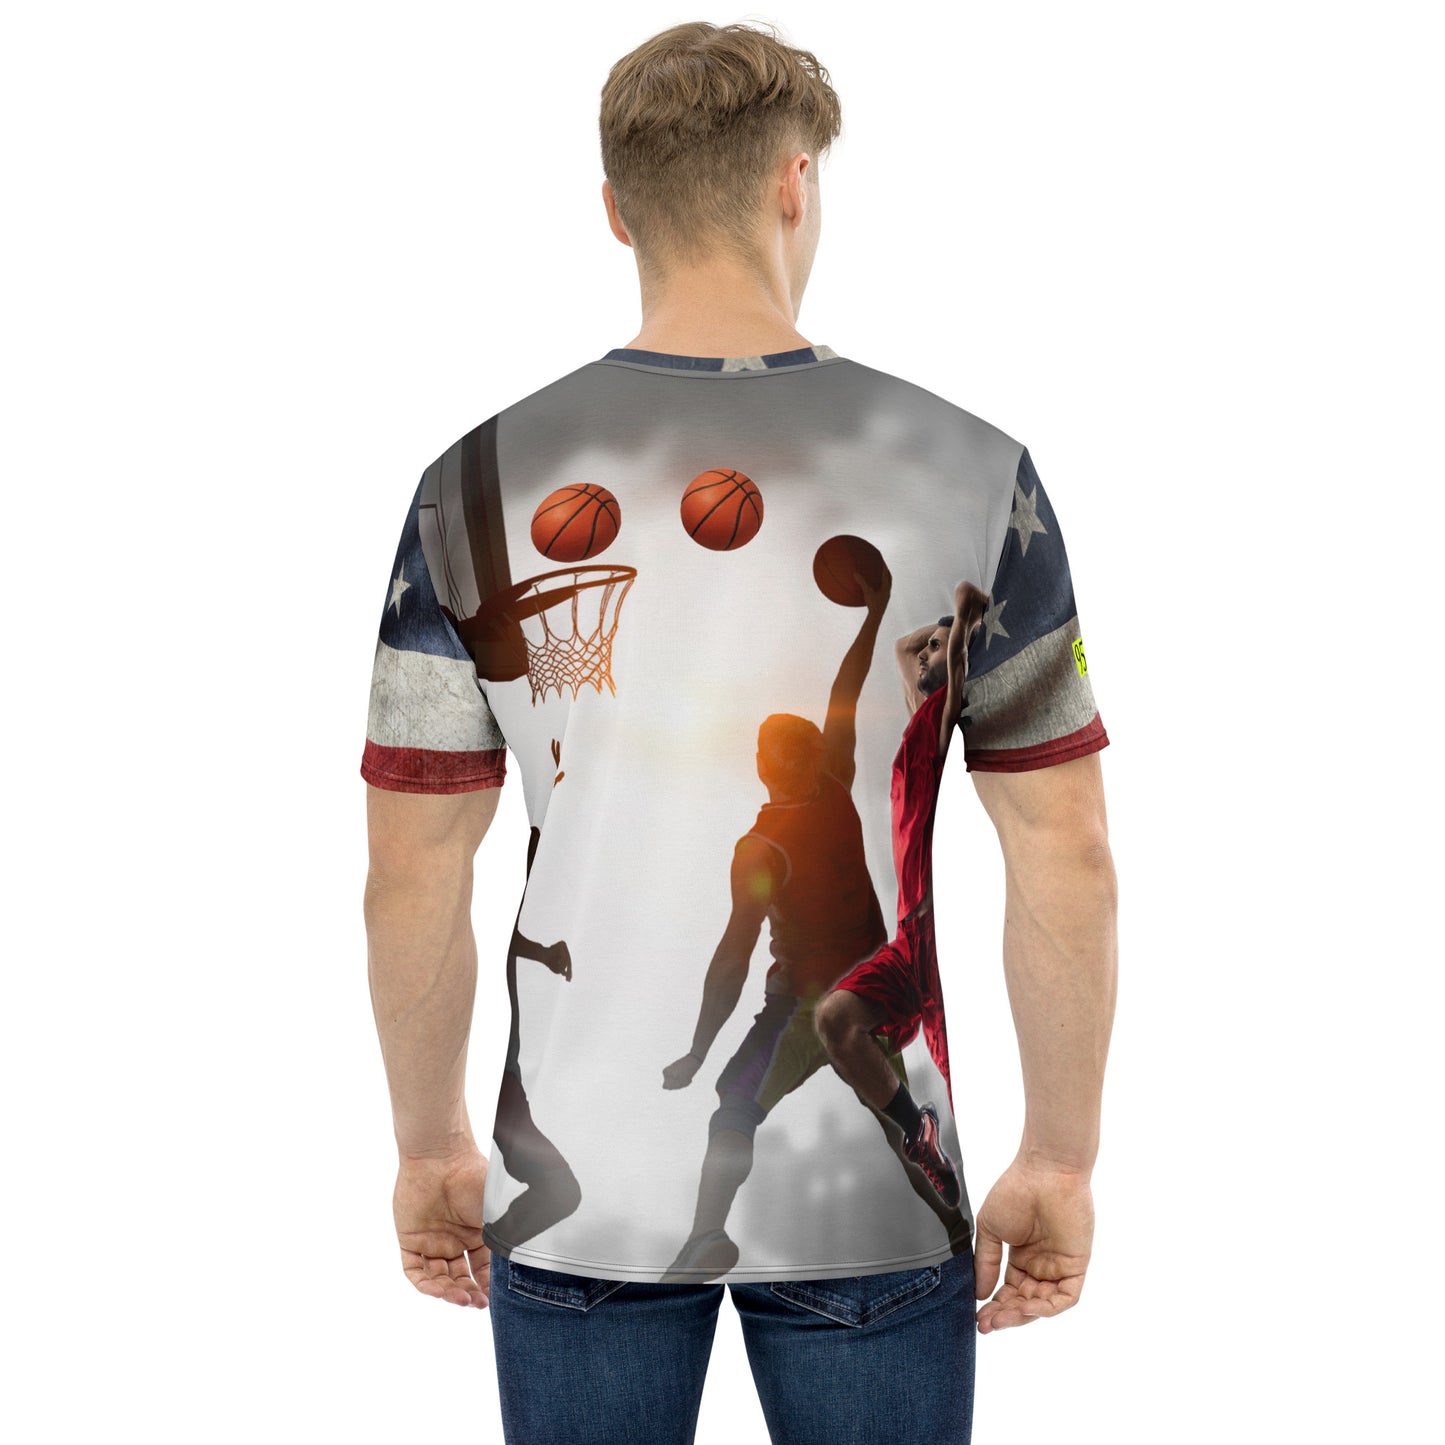 USA Basketball TR 954 t-shirt